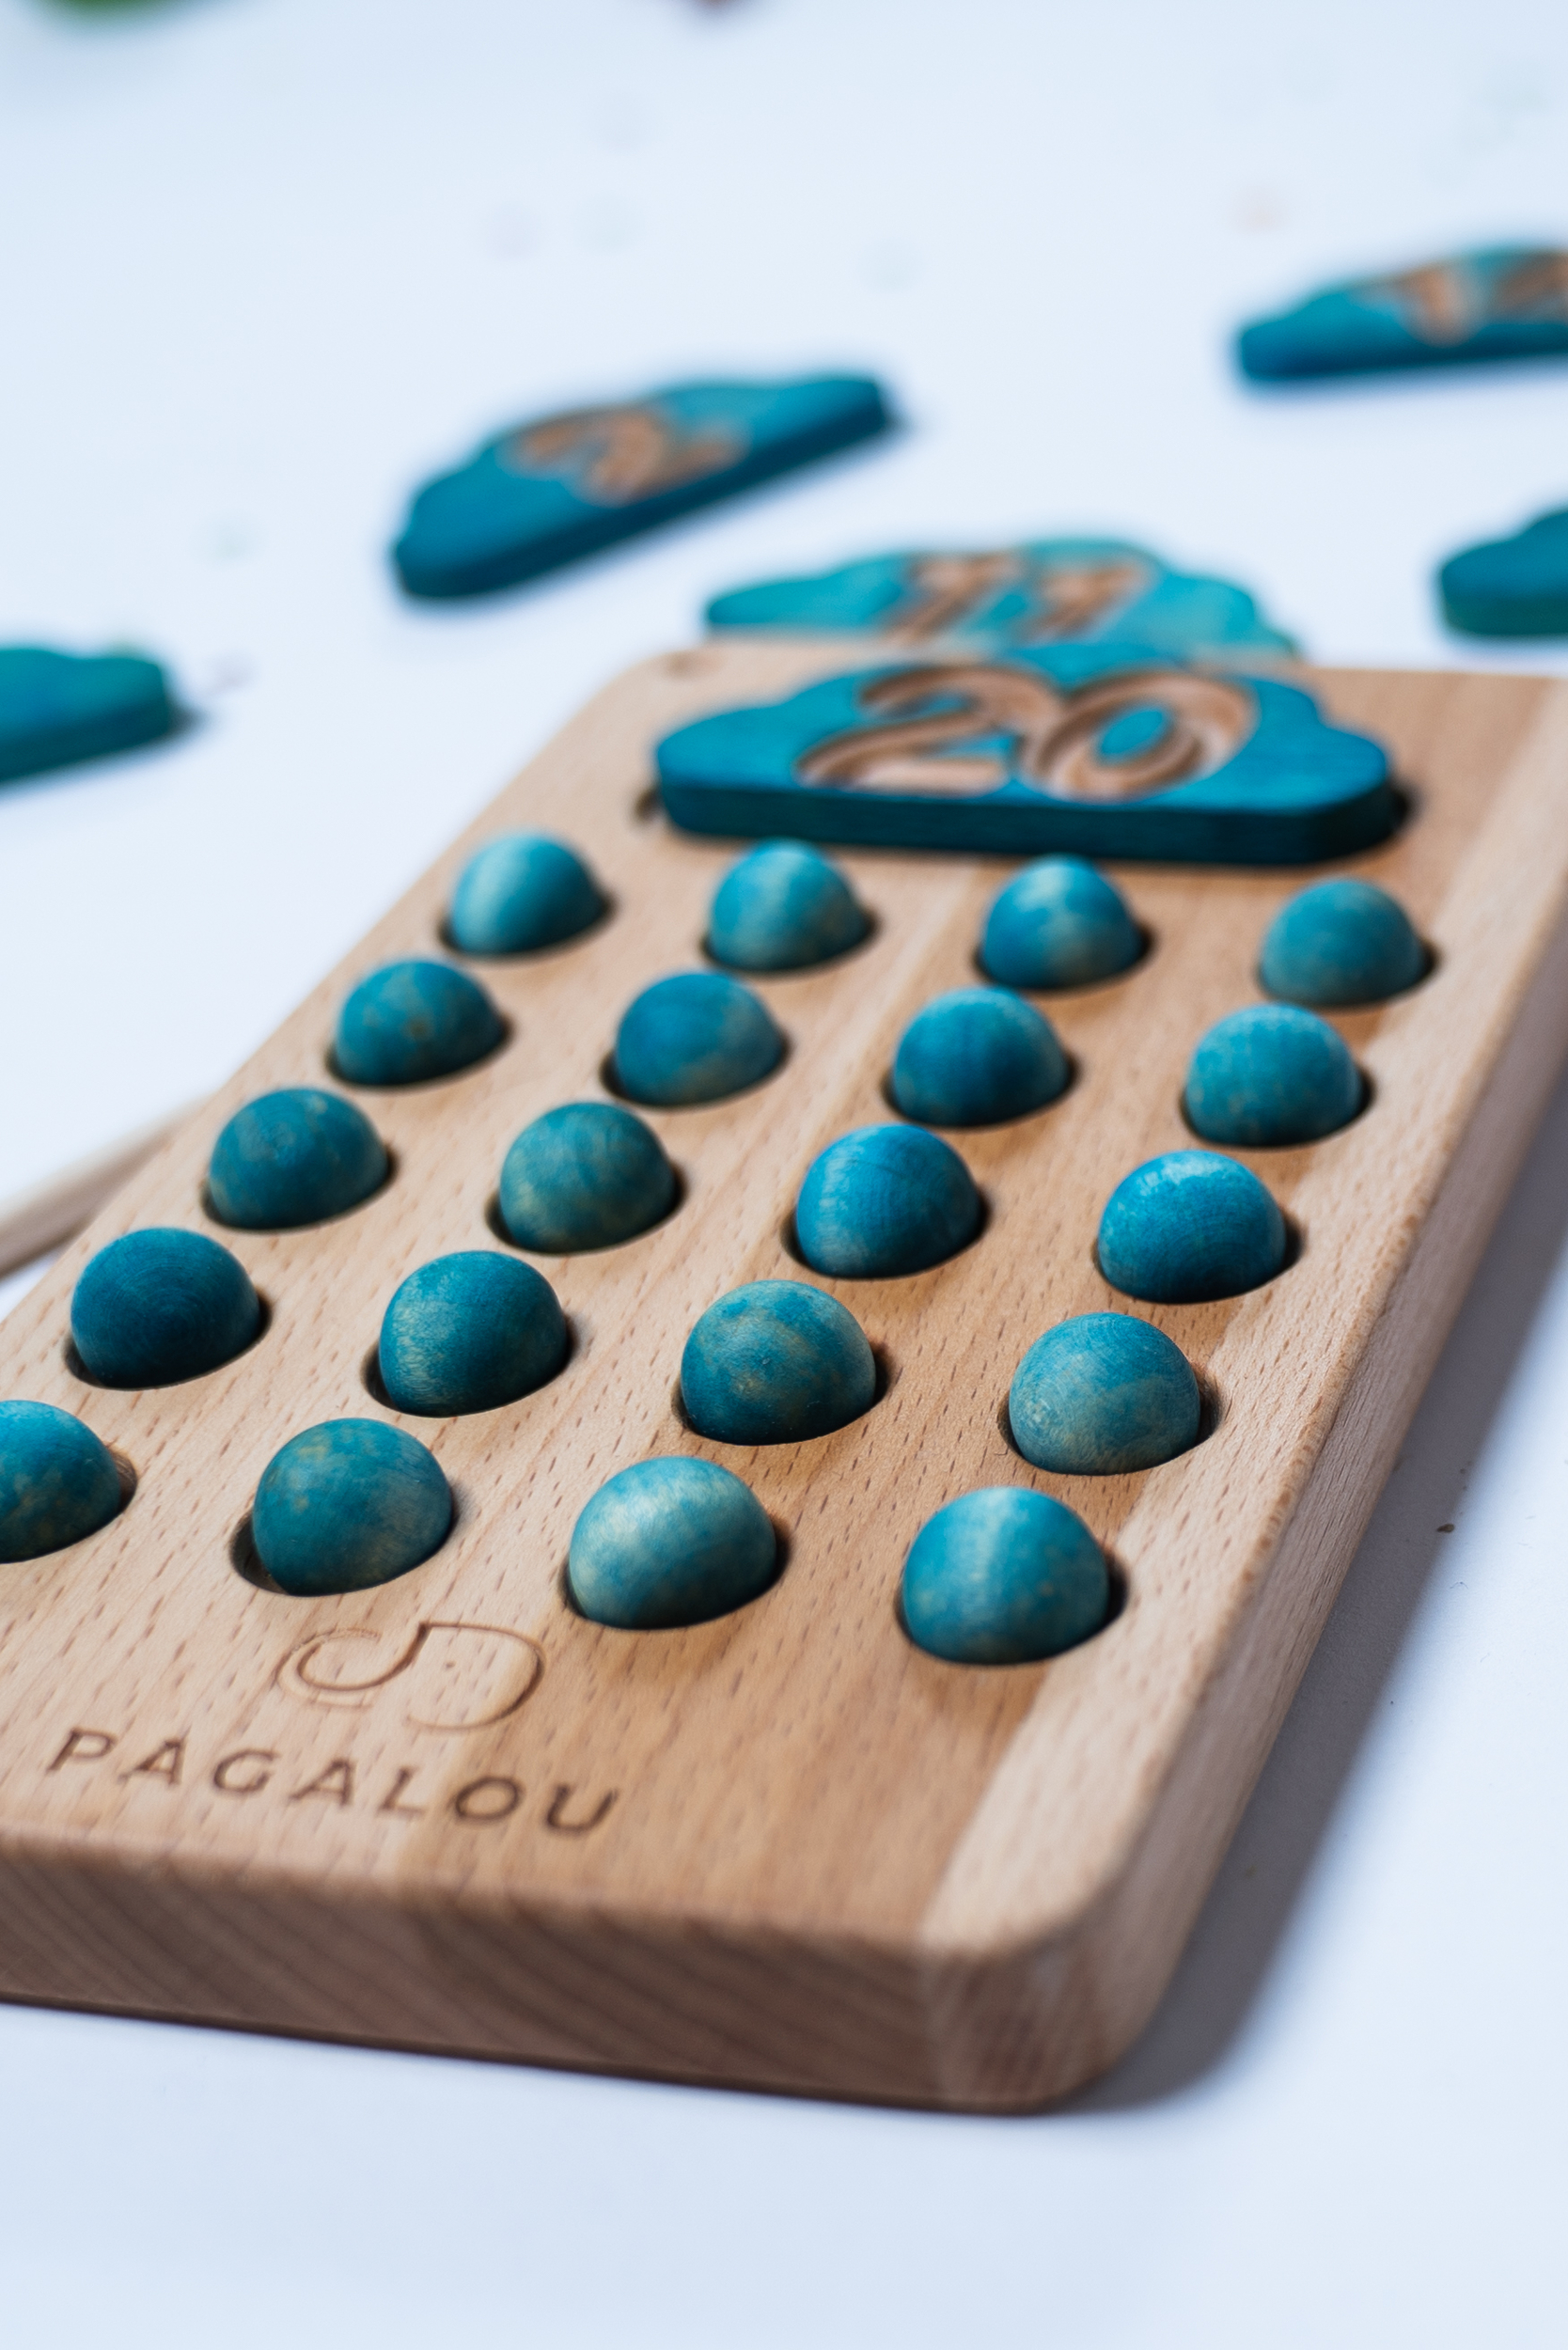 Make it Rain Tableau réversible mathématiques Pagalou Toys 5